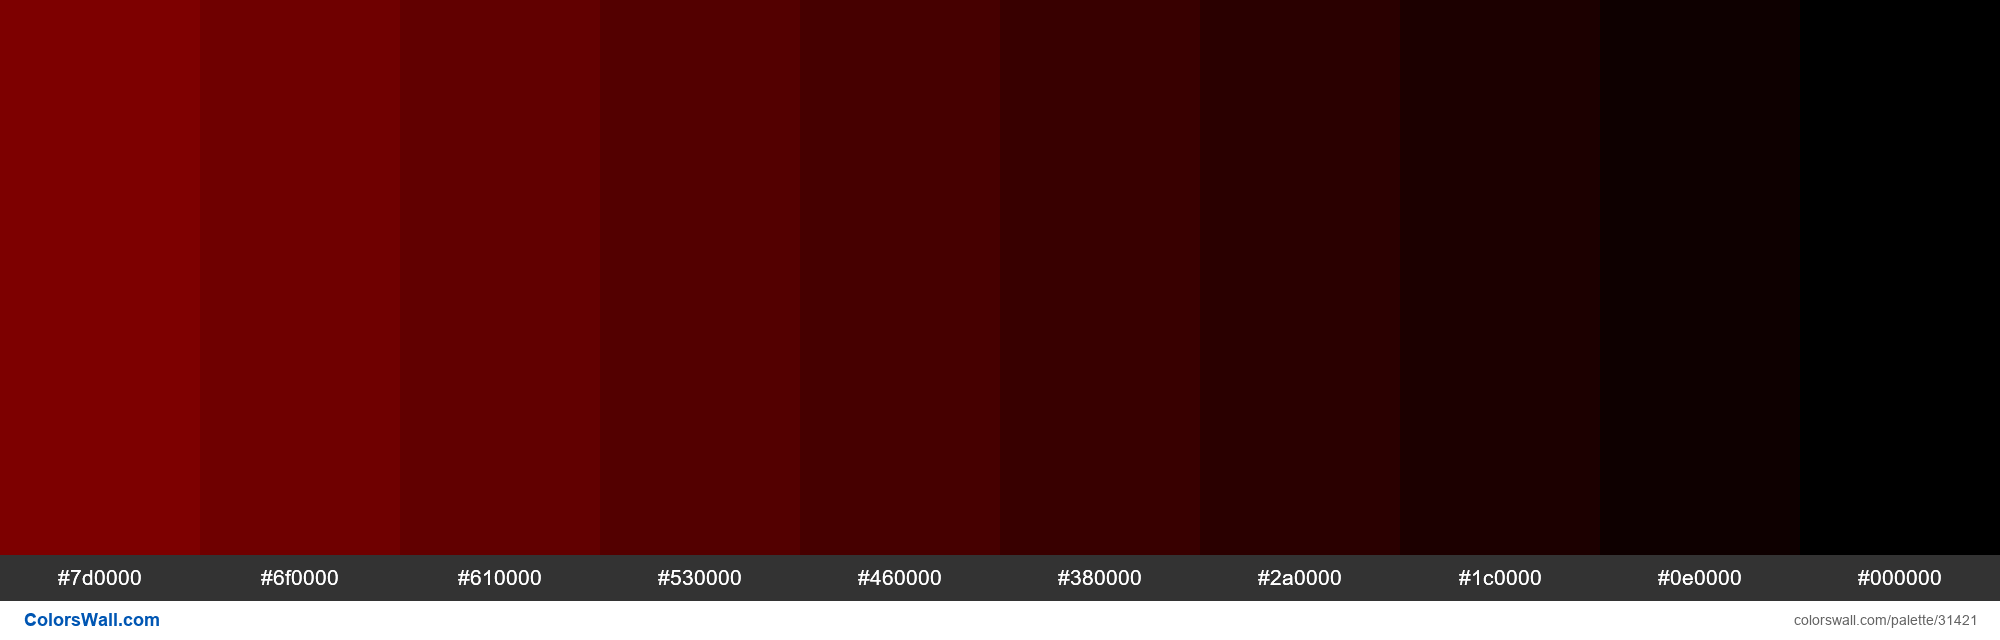 dark red Color Palette